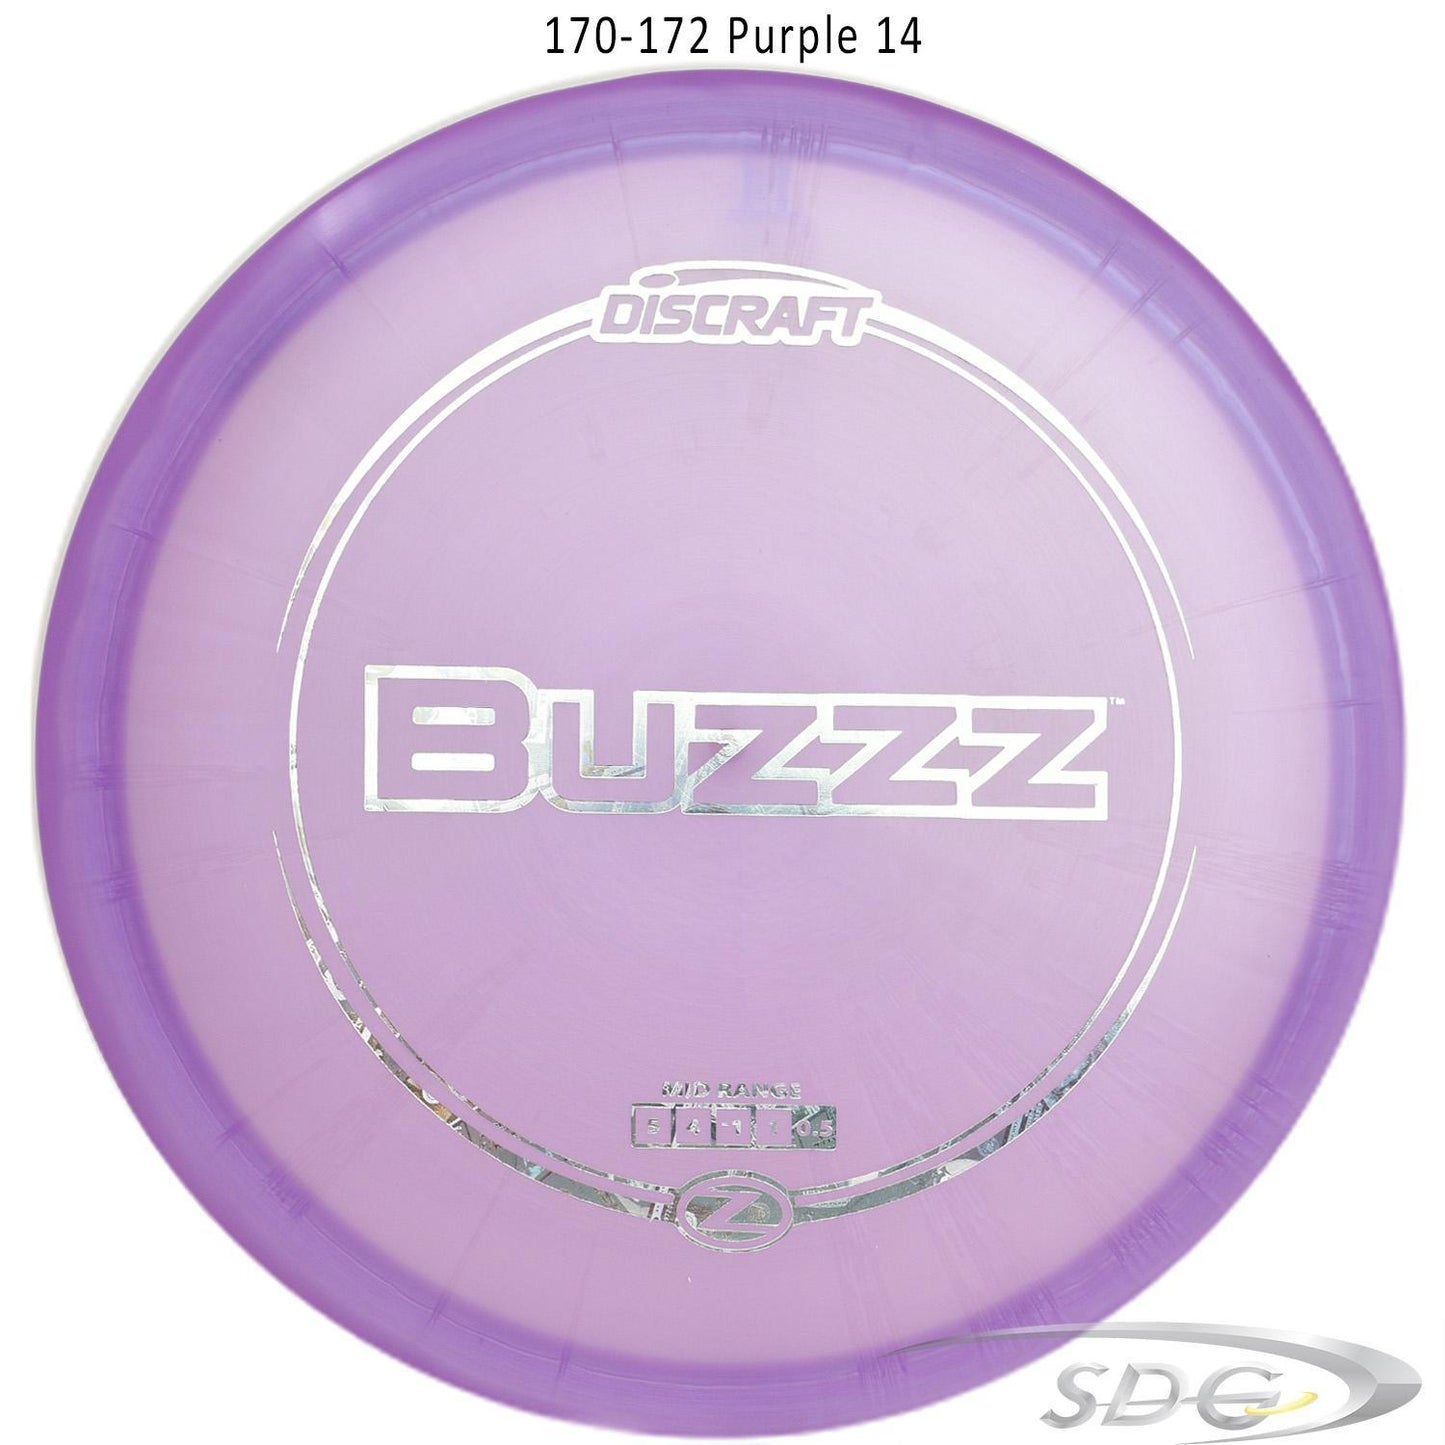 discraft-z-line-buzzz-disc-golf-mid-range-172-170-weights 170-172 Purple 14 